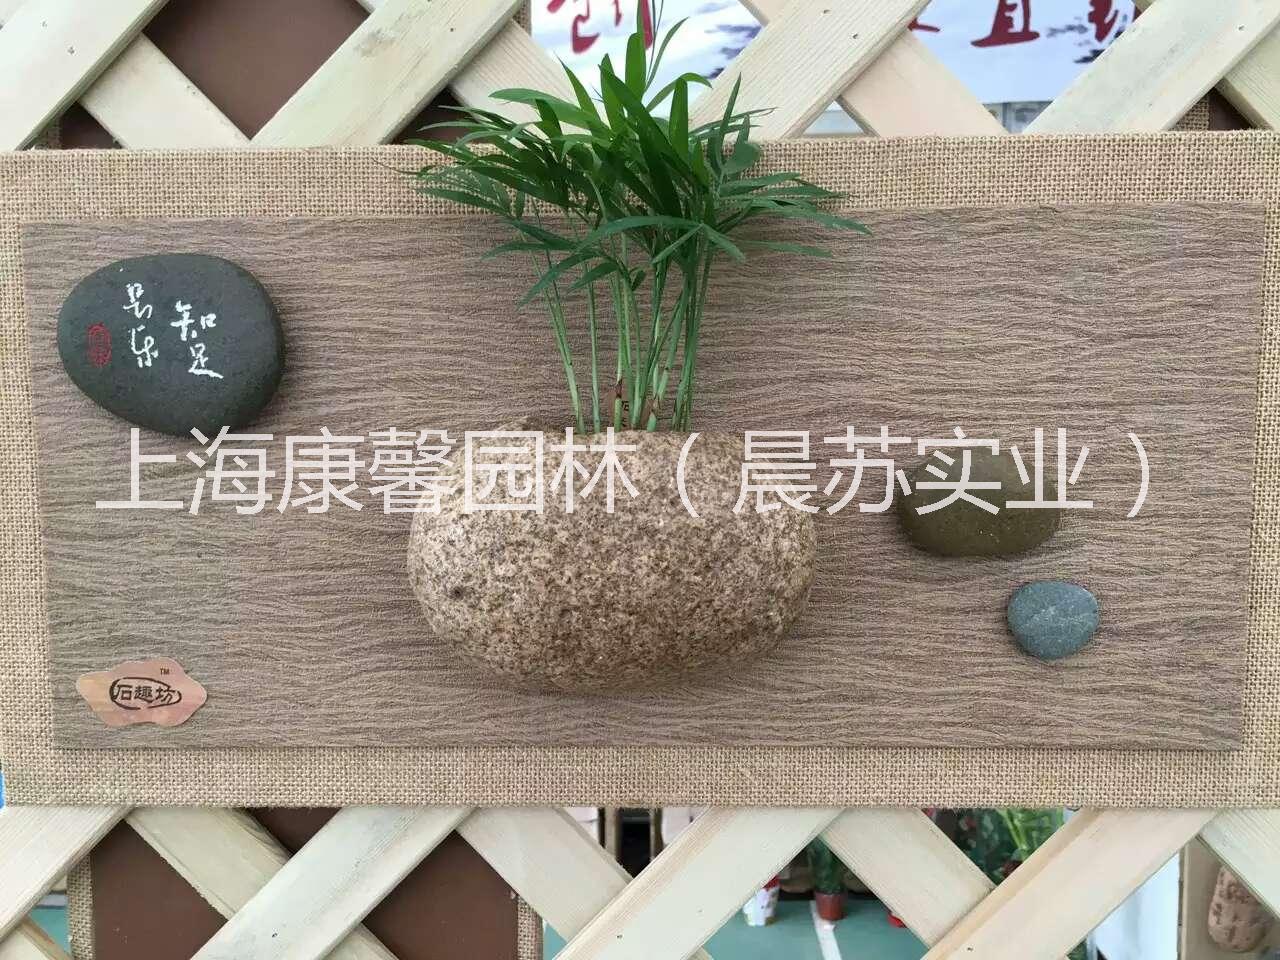 供应壁挂式办公室植物，上海壁挂式办公室植物租赁电话，上海壁挂式办公室植物出租电话